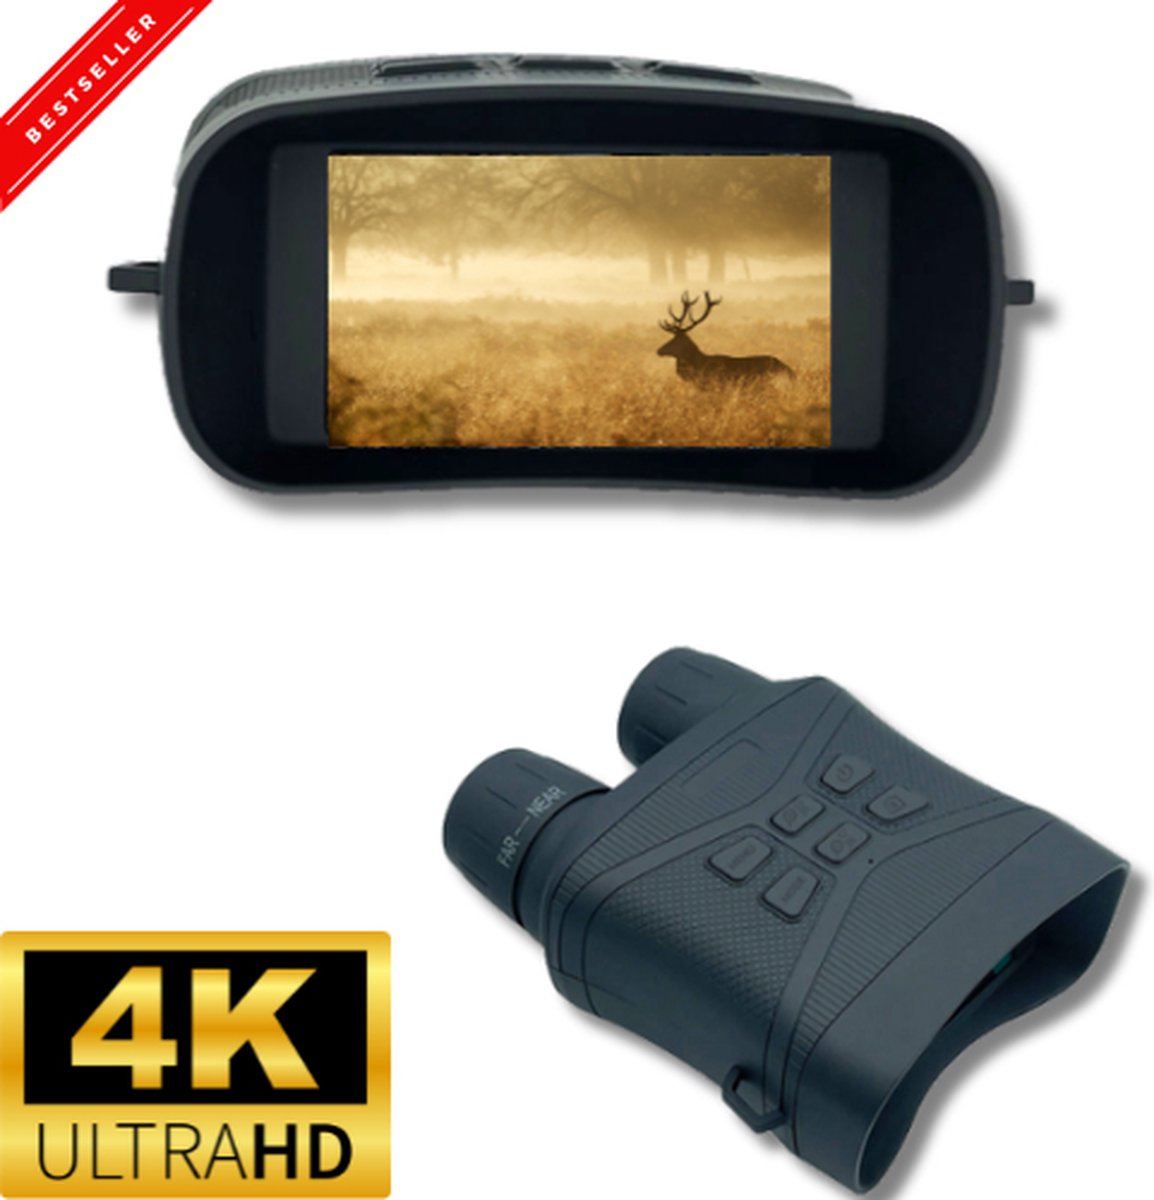 Nachtkijker met Infrarood - Night Vision - 4K Ultra HD & 42MP - Warmtebeeld - 300M - Ingebouwde Batterij